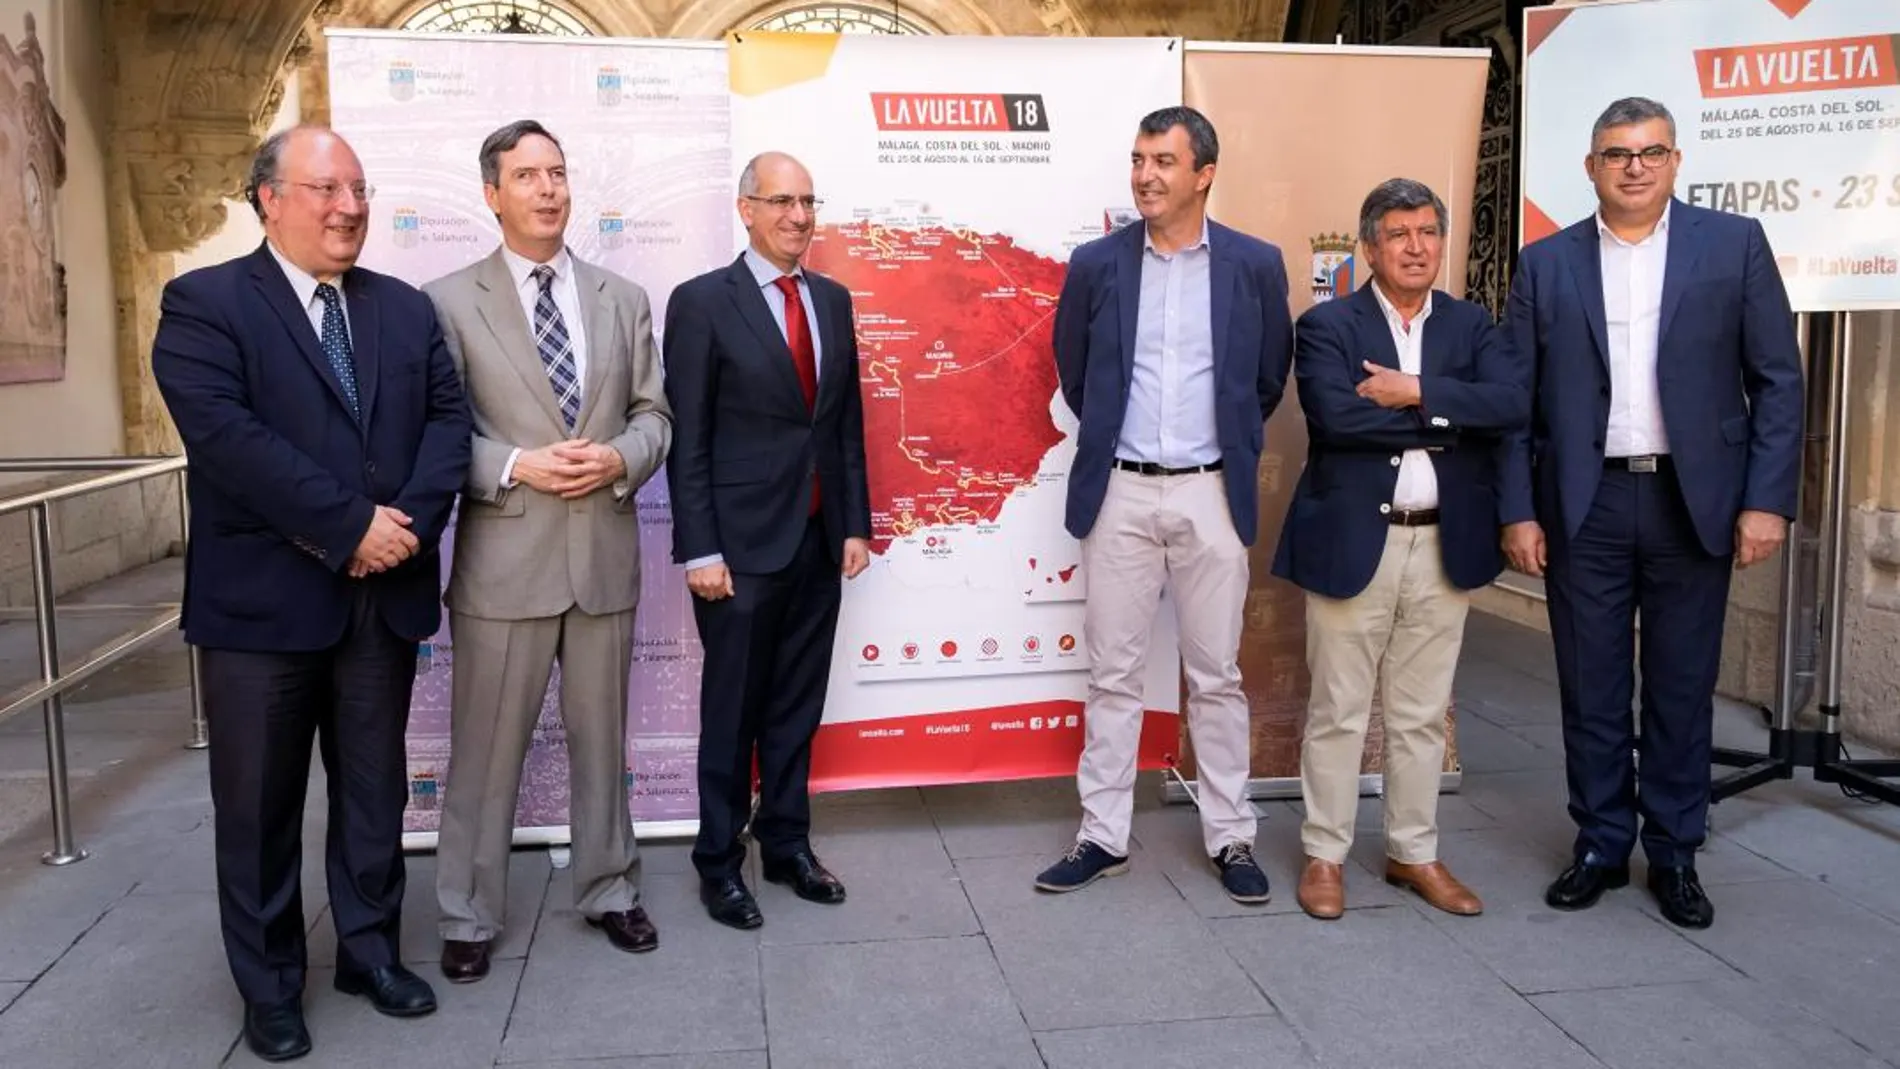 El presidente de la Diputación de Salamanca, Javier Iglesias, presenta las dos etapas junto al director de la Vuelta, Javier Guillén, y Enrique Cabero, vicerrector de la Usal, entre otros.